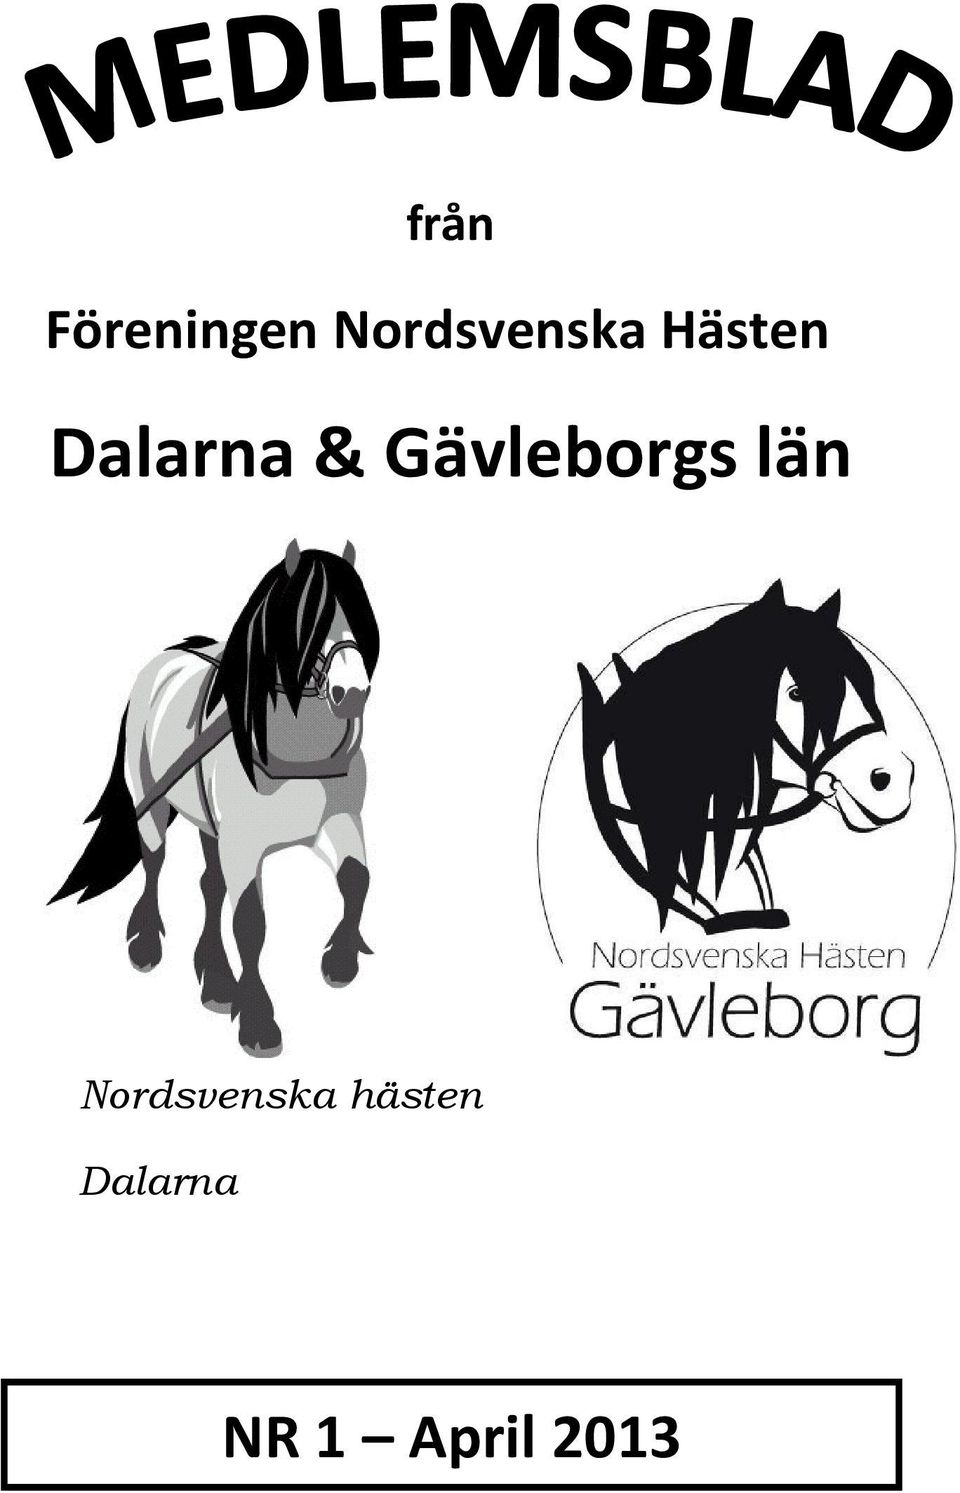 Dalarna & Gävleborgs län